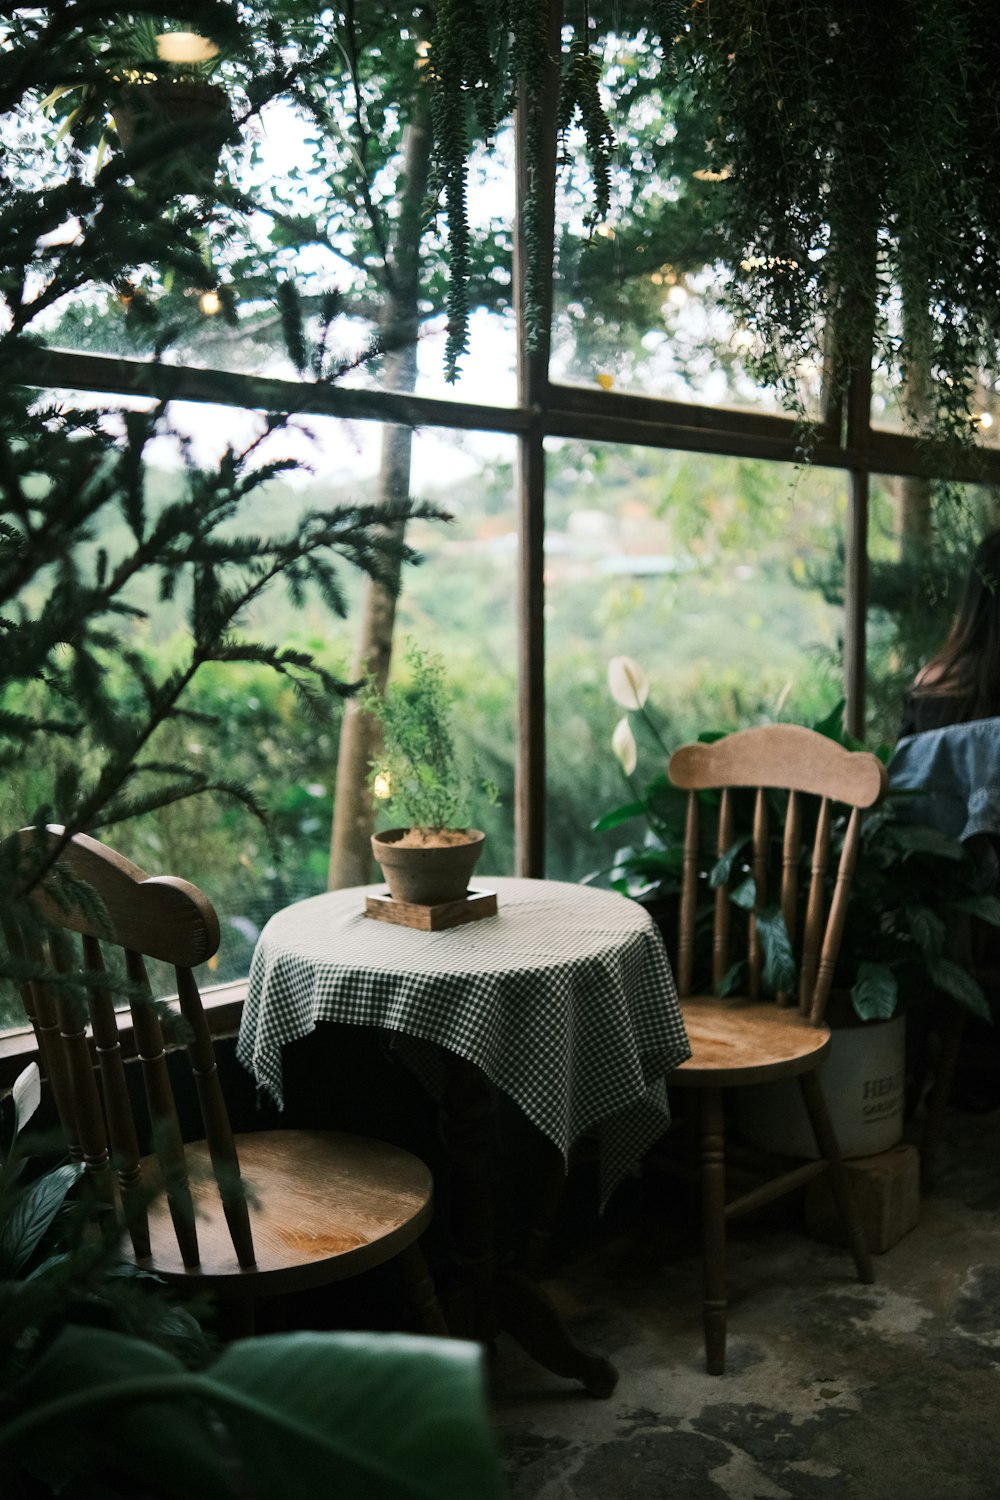 Una mujer sentada en una mesa con una planta en maceta encima